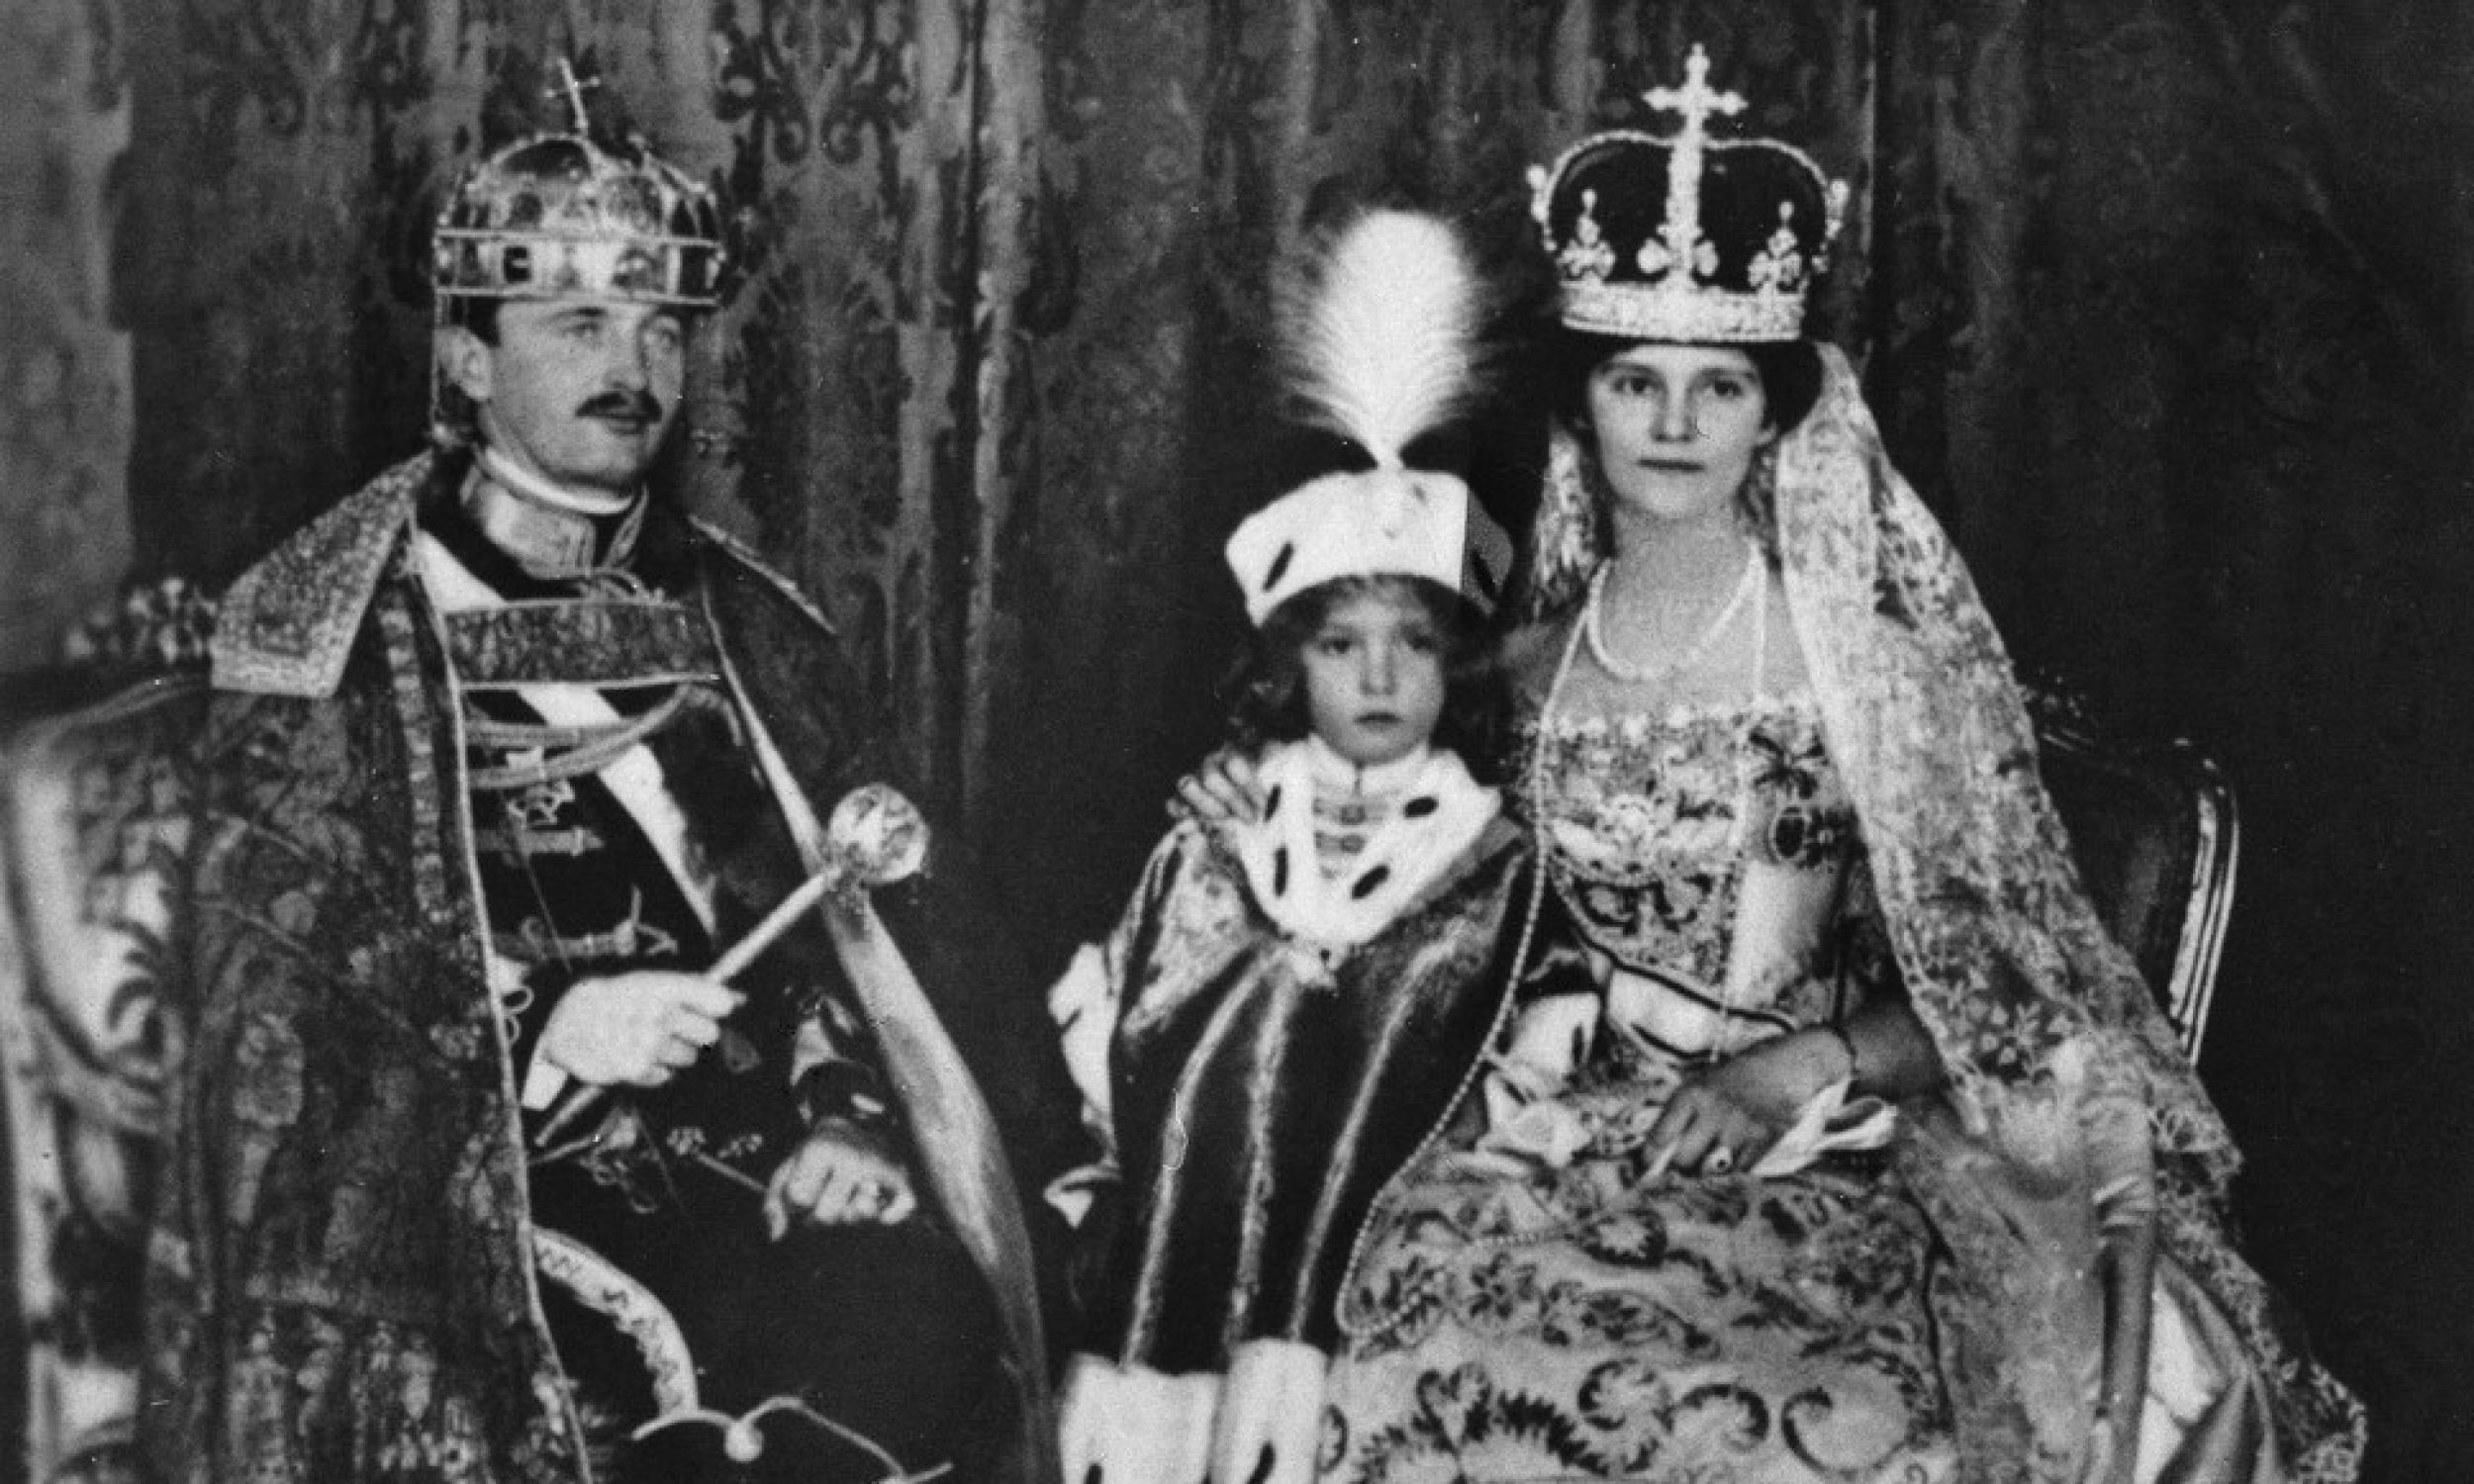 Карл I у короні св. Стефана на голові, з дружиною Зітою та сином Отто як новокороновані правителі Угорського королівства. 1916 року. Фото:. NAC/IKC